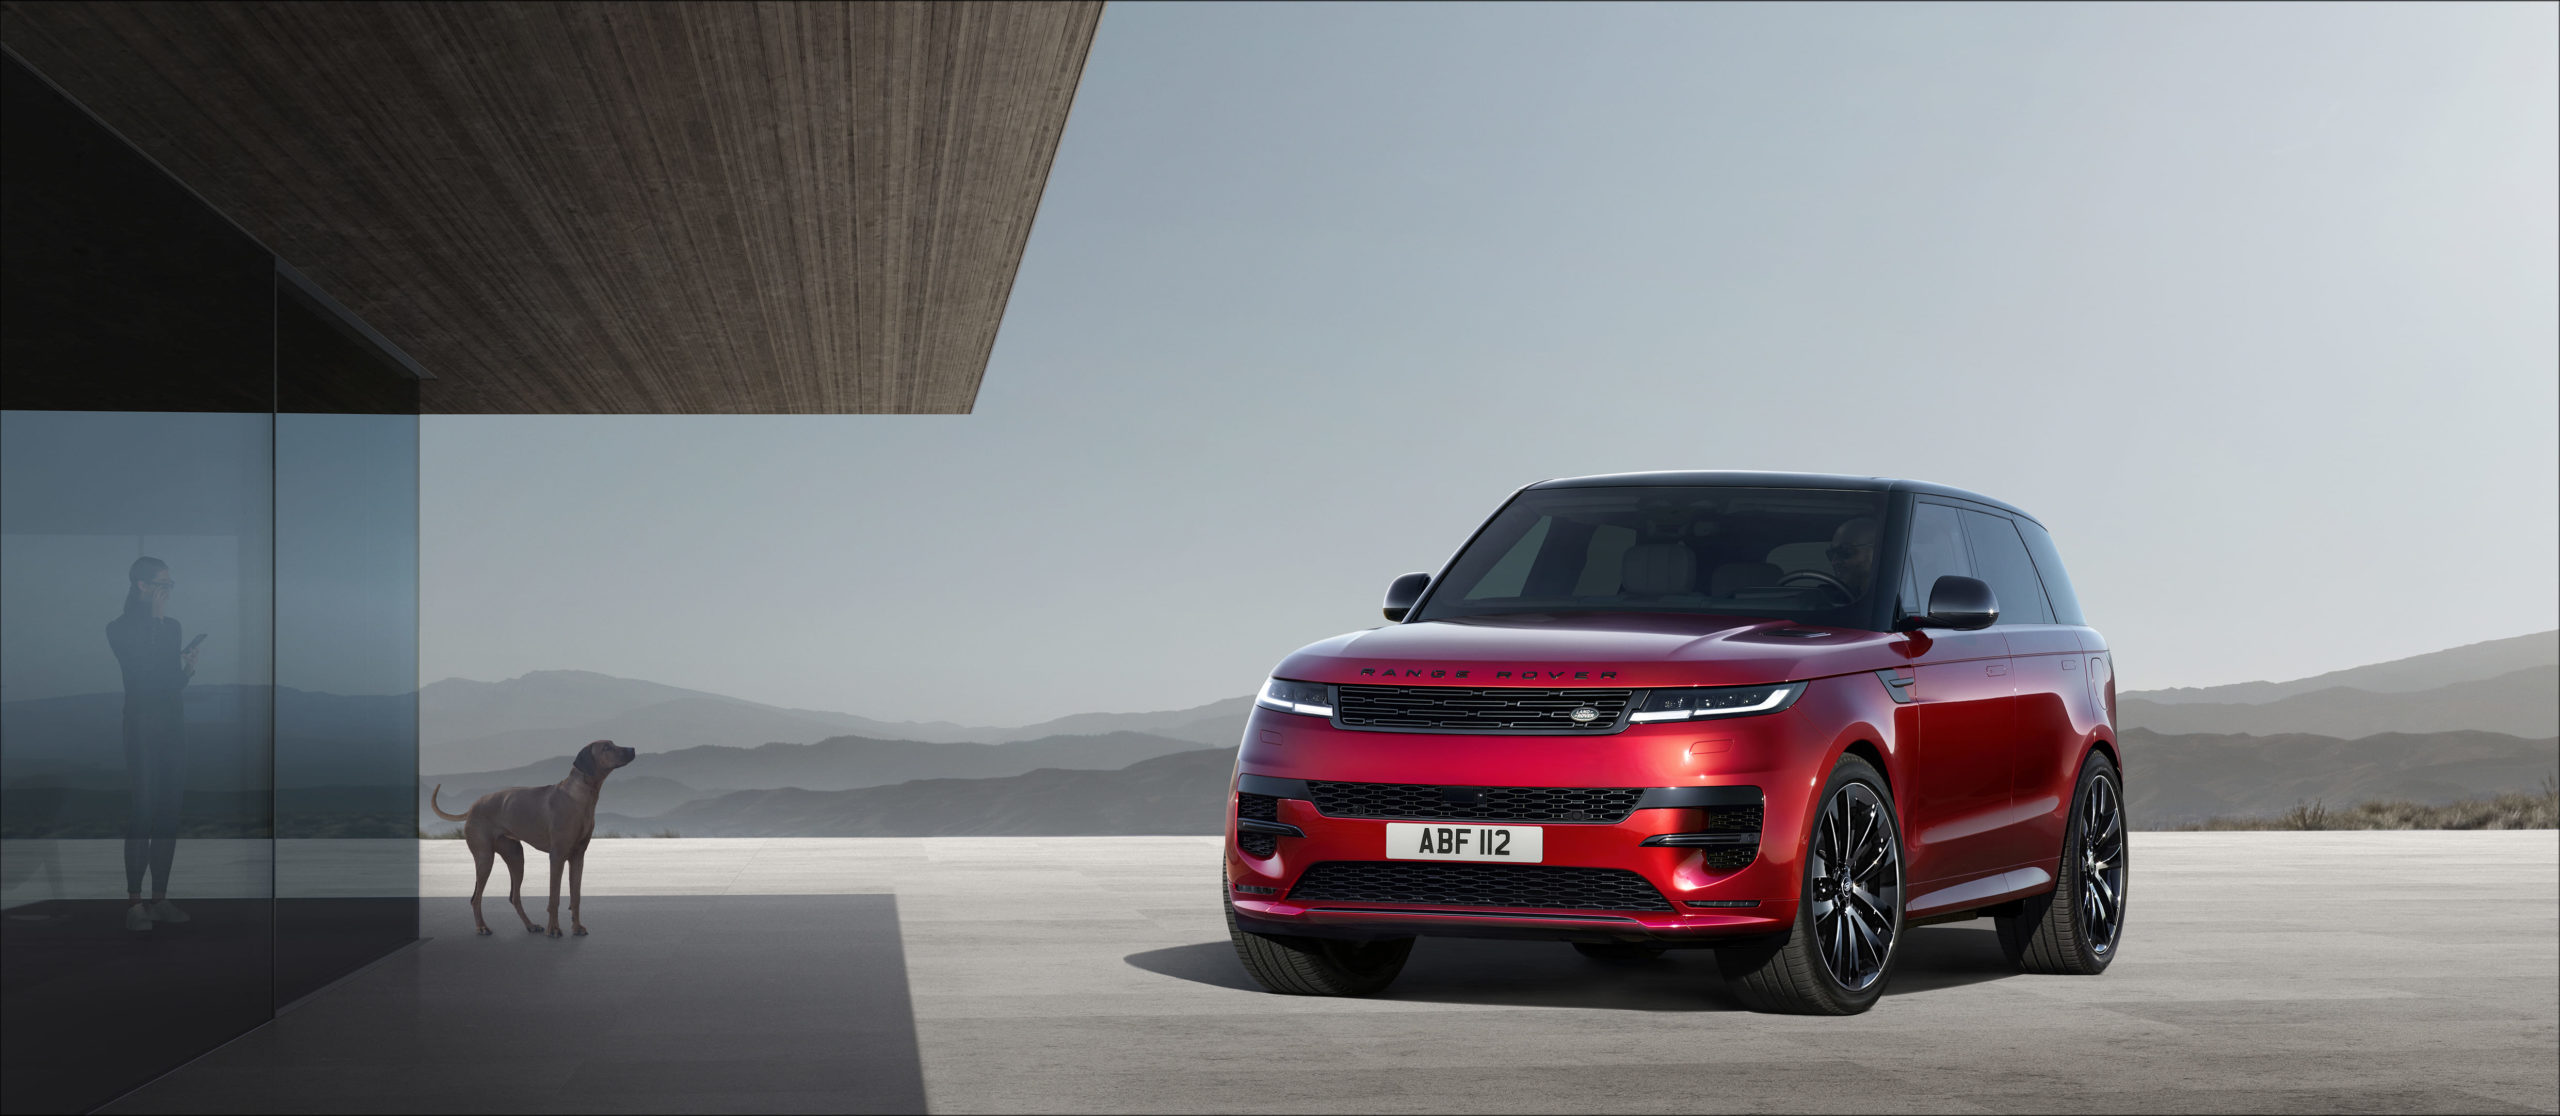 Der neue Range Rover Sport feiert spektakuläre Weltpremiere mit der atemberaubenden Bezwingung einer Talsperrenmauer